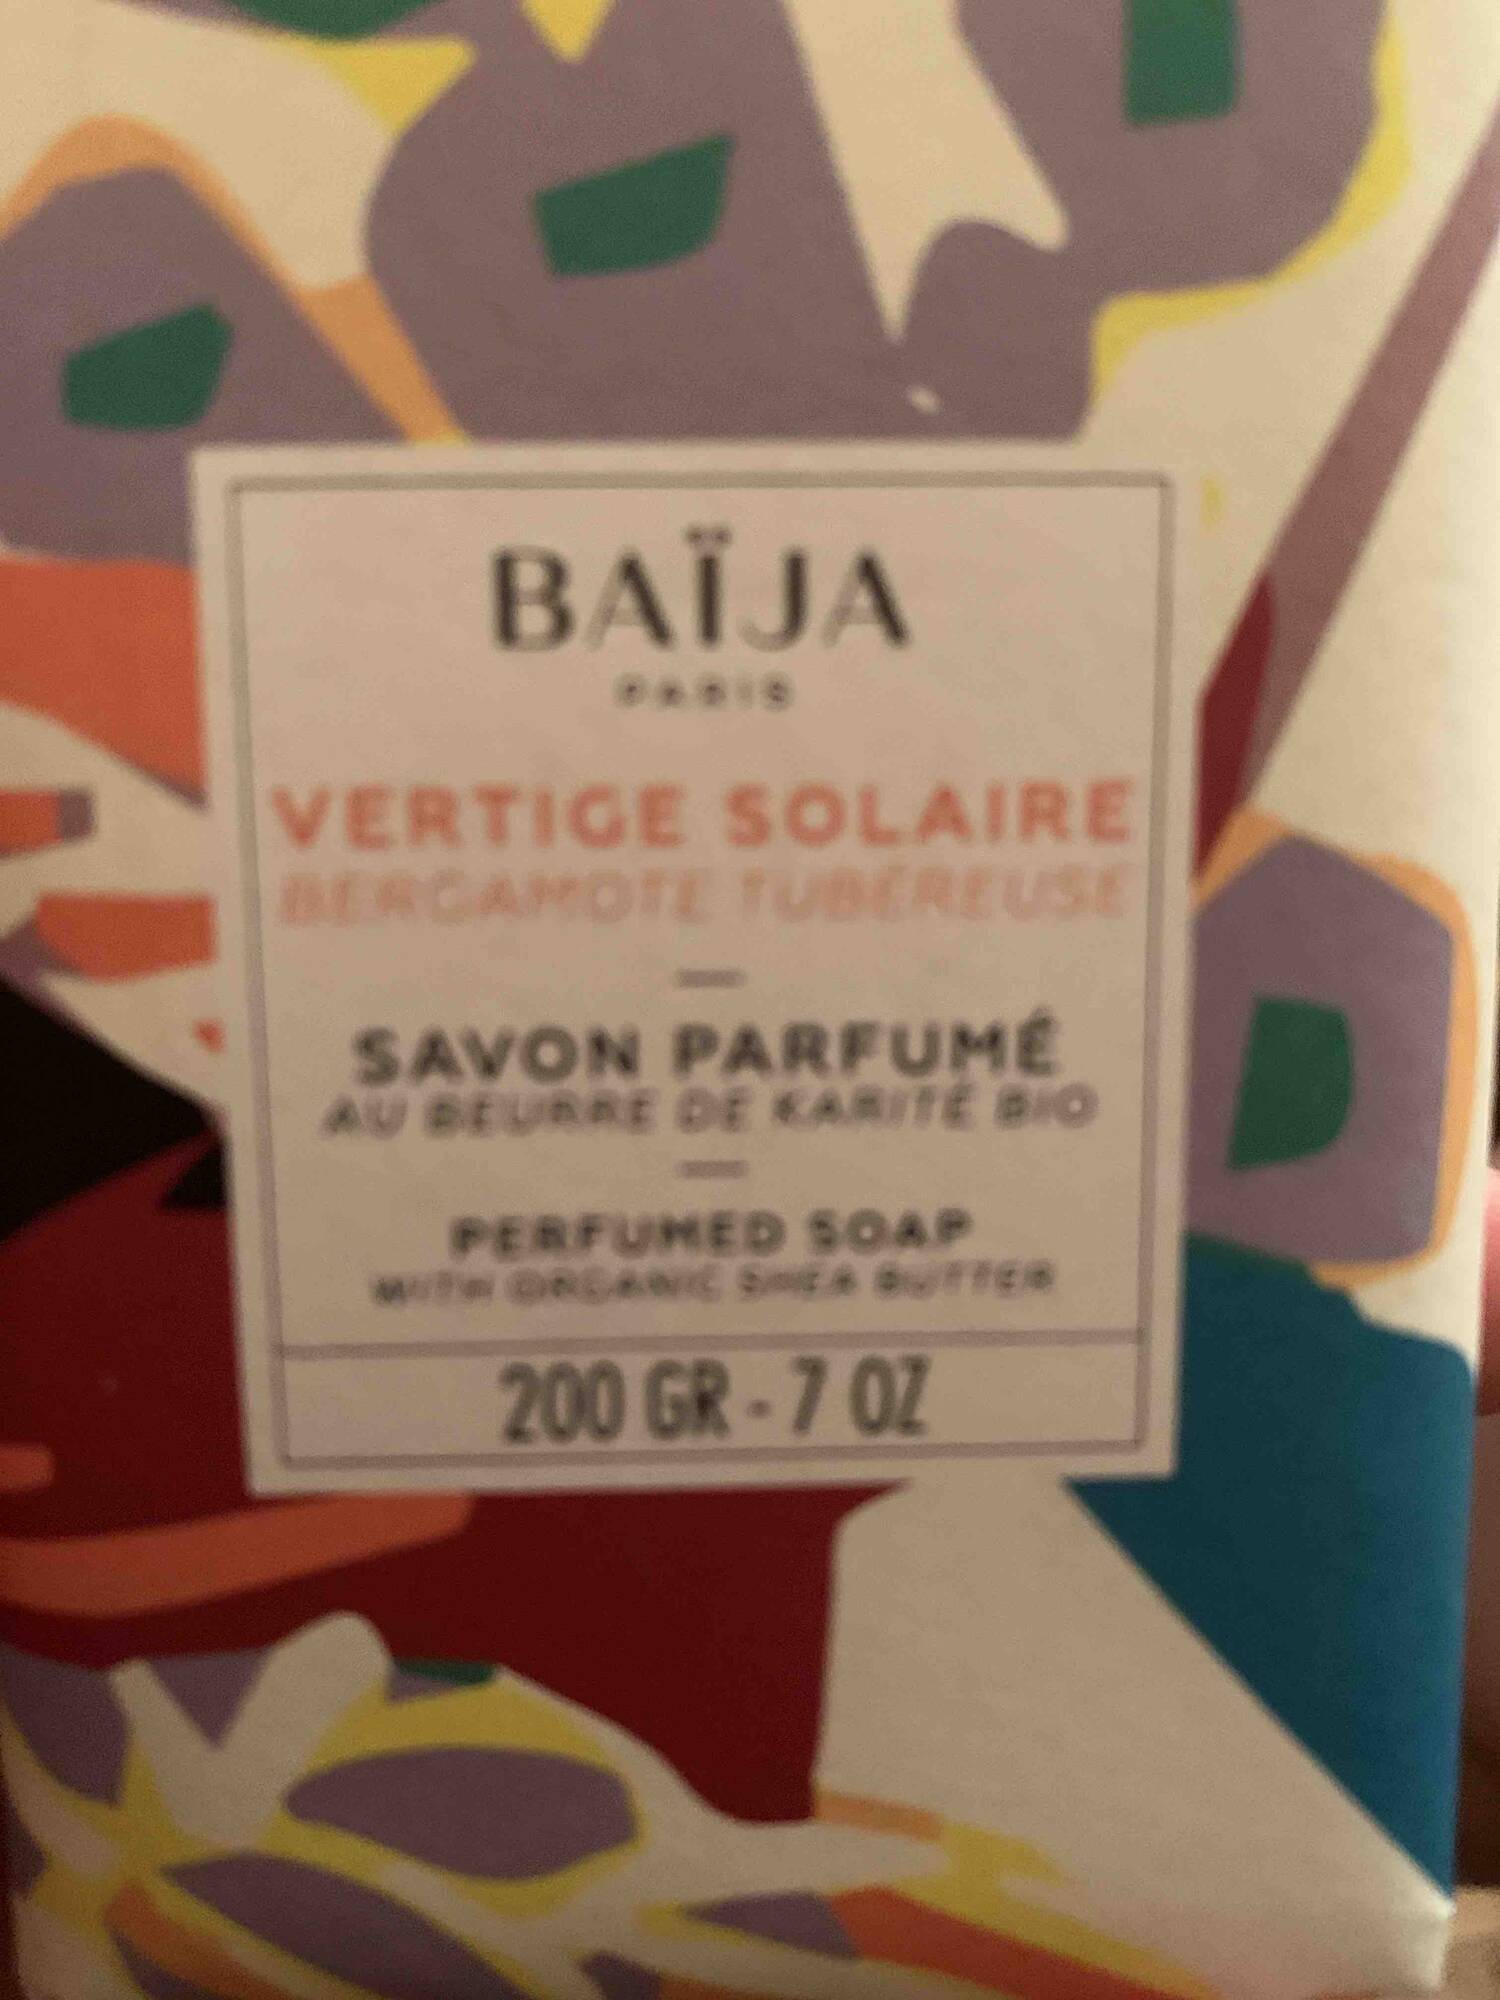 BAIJA - Vertige solaire - Savon parfumé au beurre de karité bio